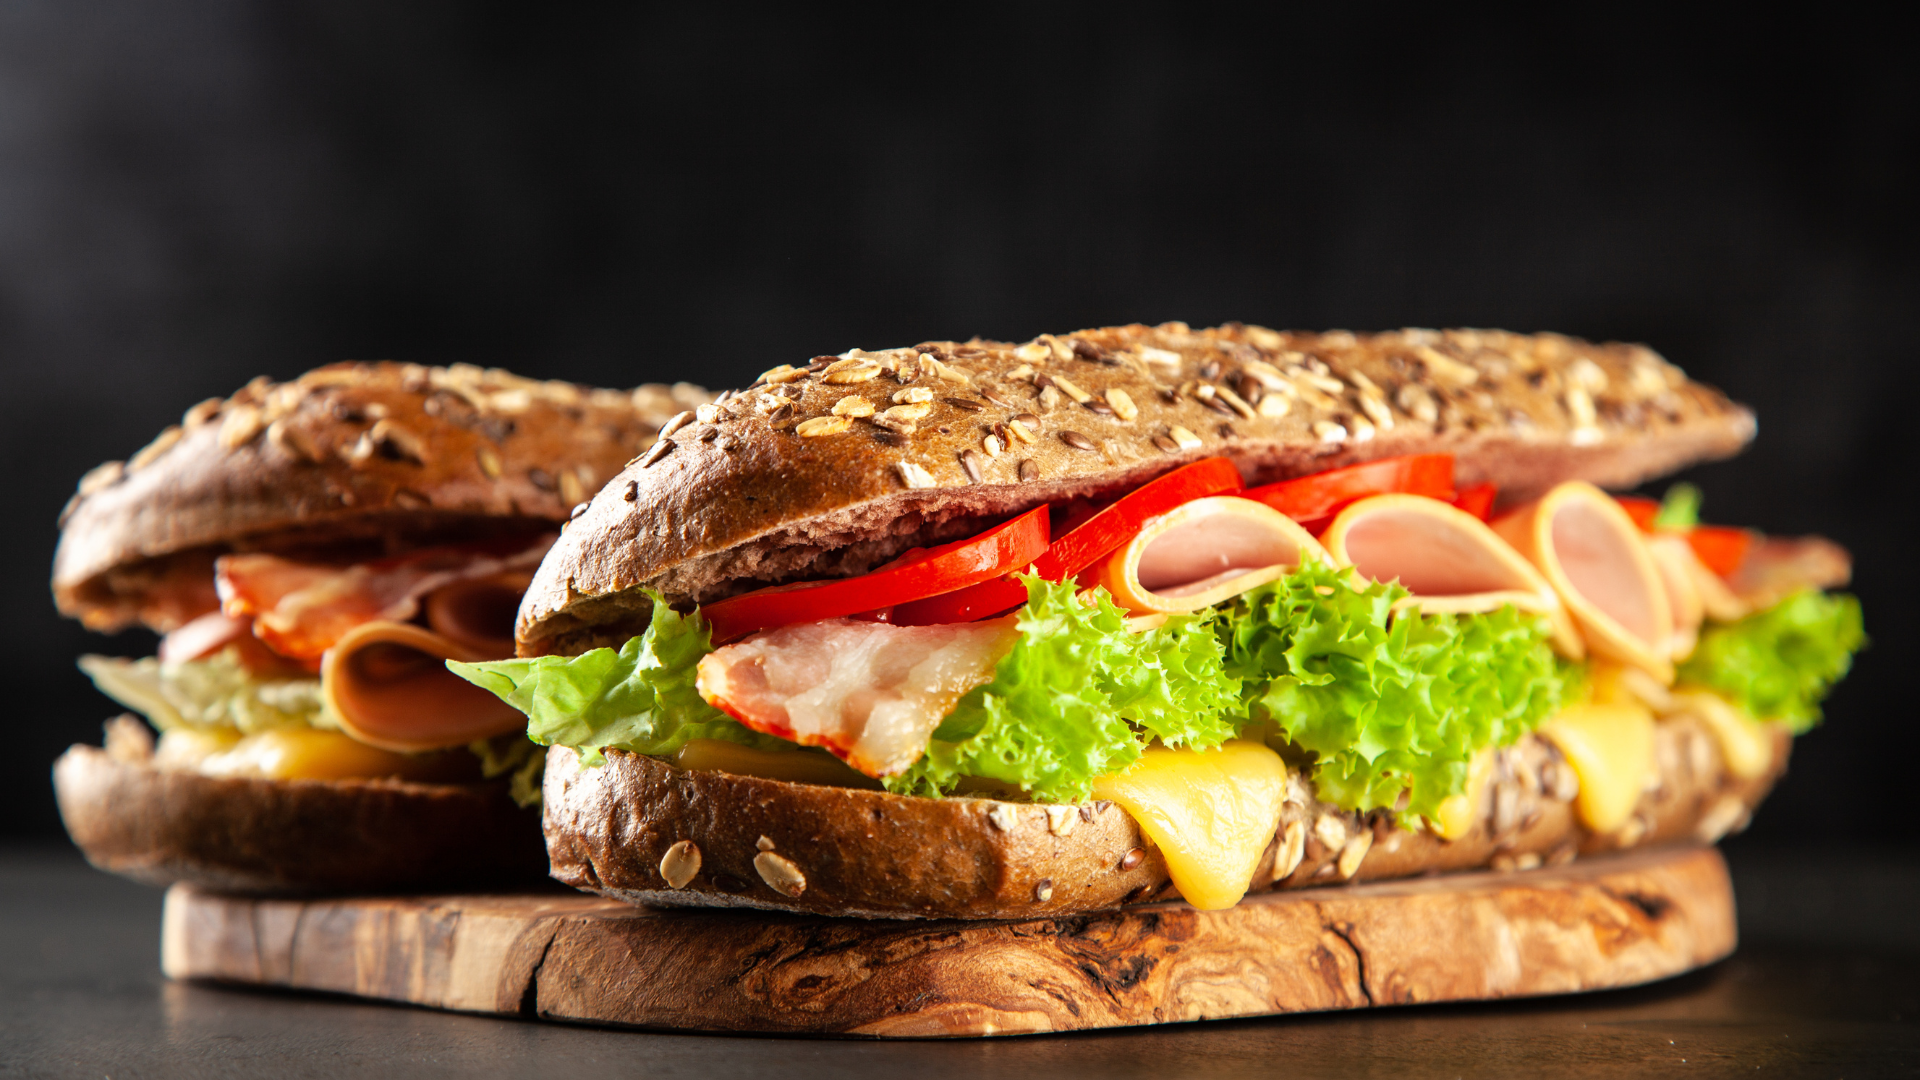 O pão do Subway é o mesmo pão